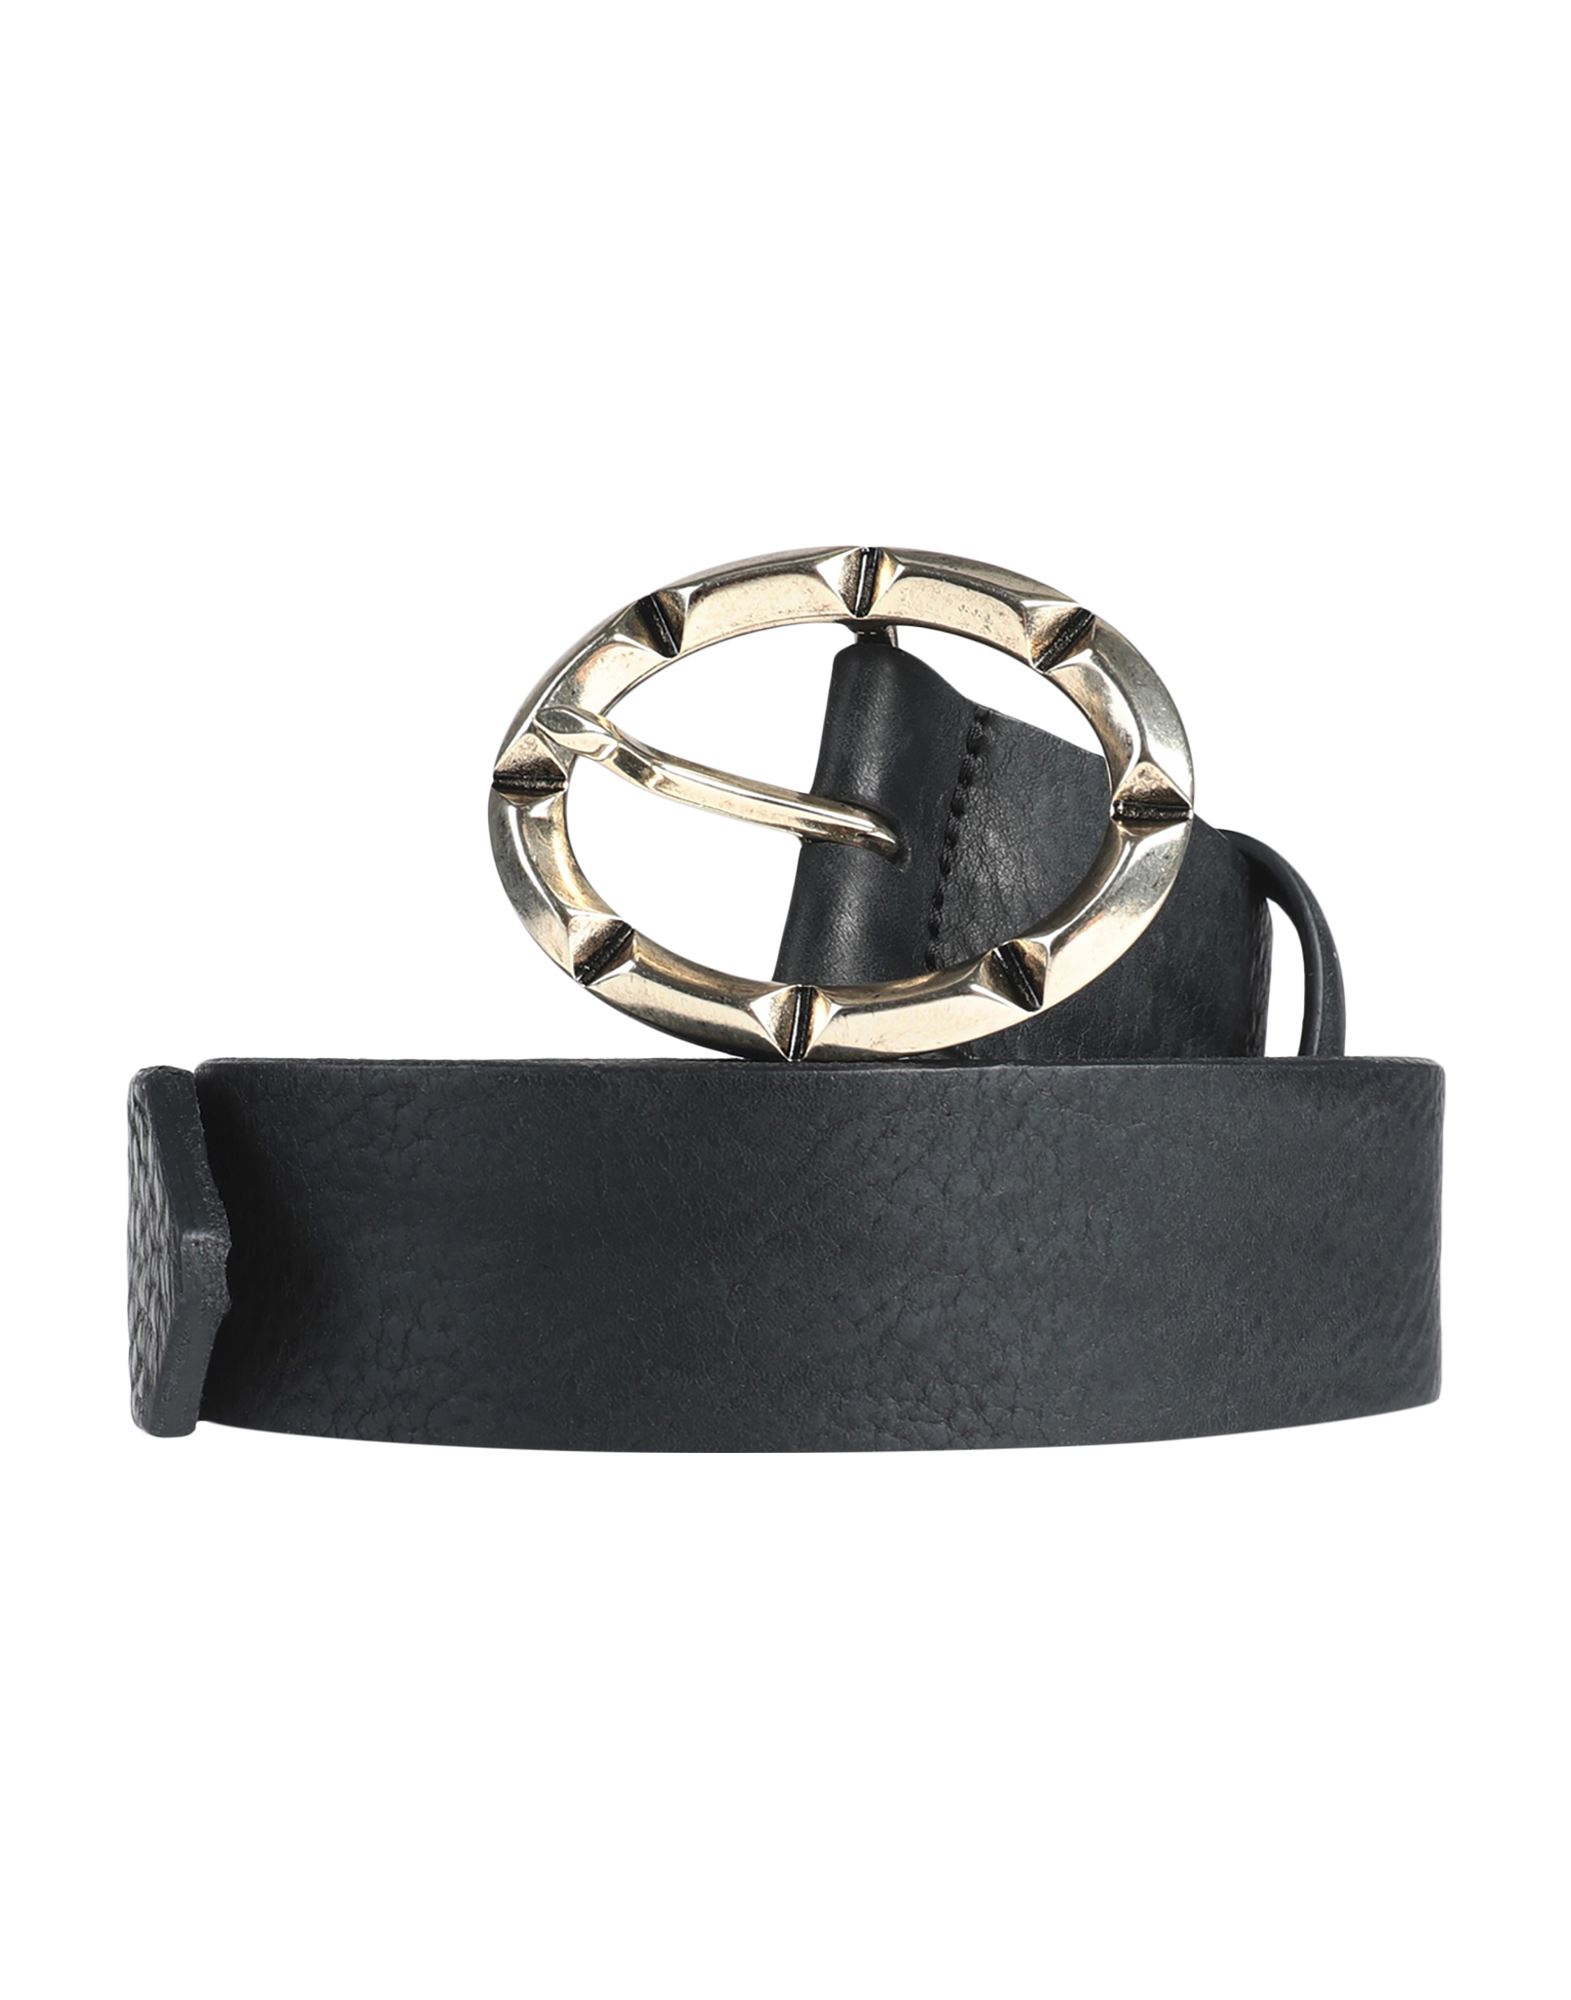 ジャストカバリ メンズ ベルト アクセサリー Leather belt-